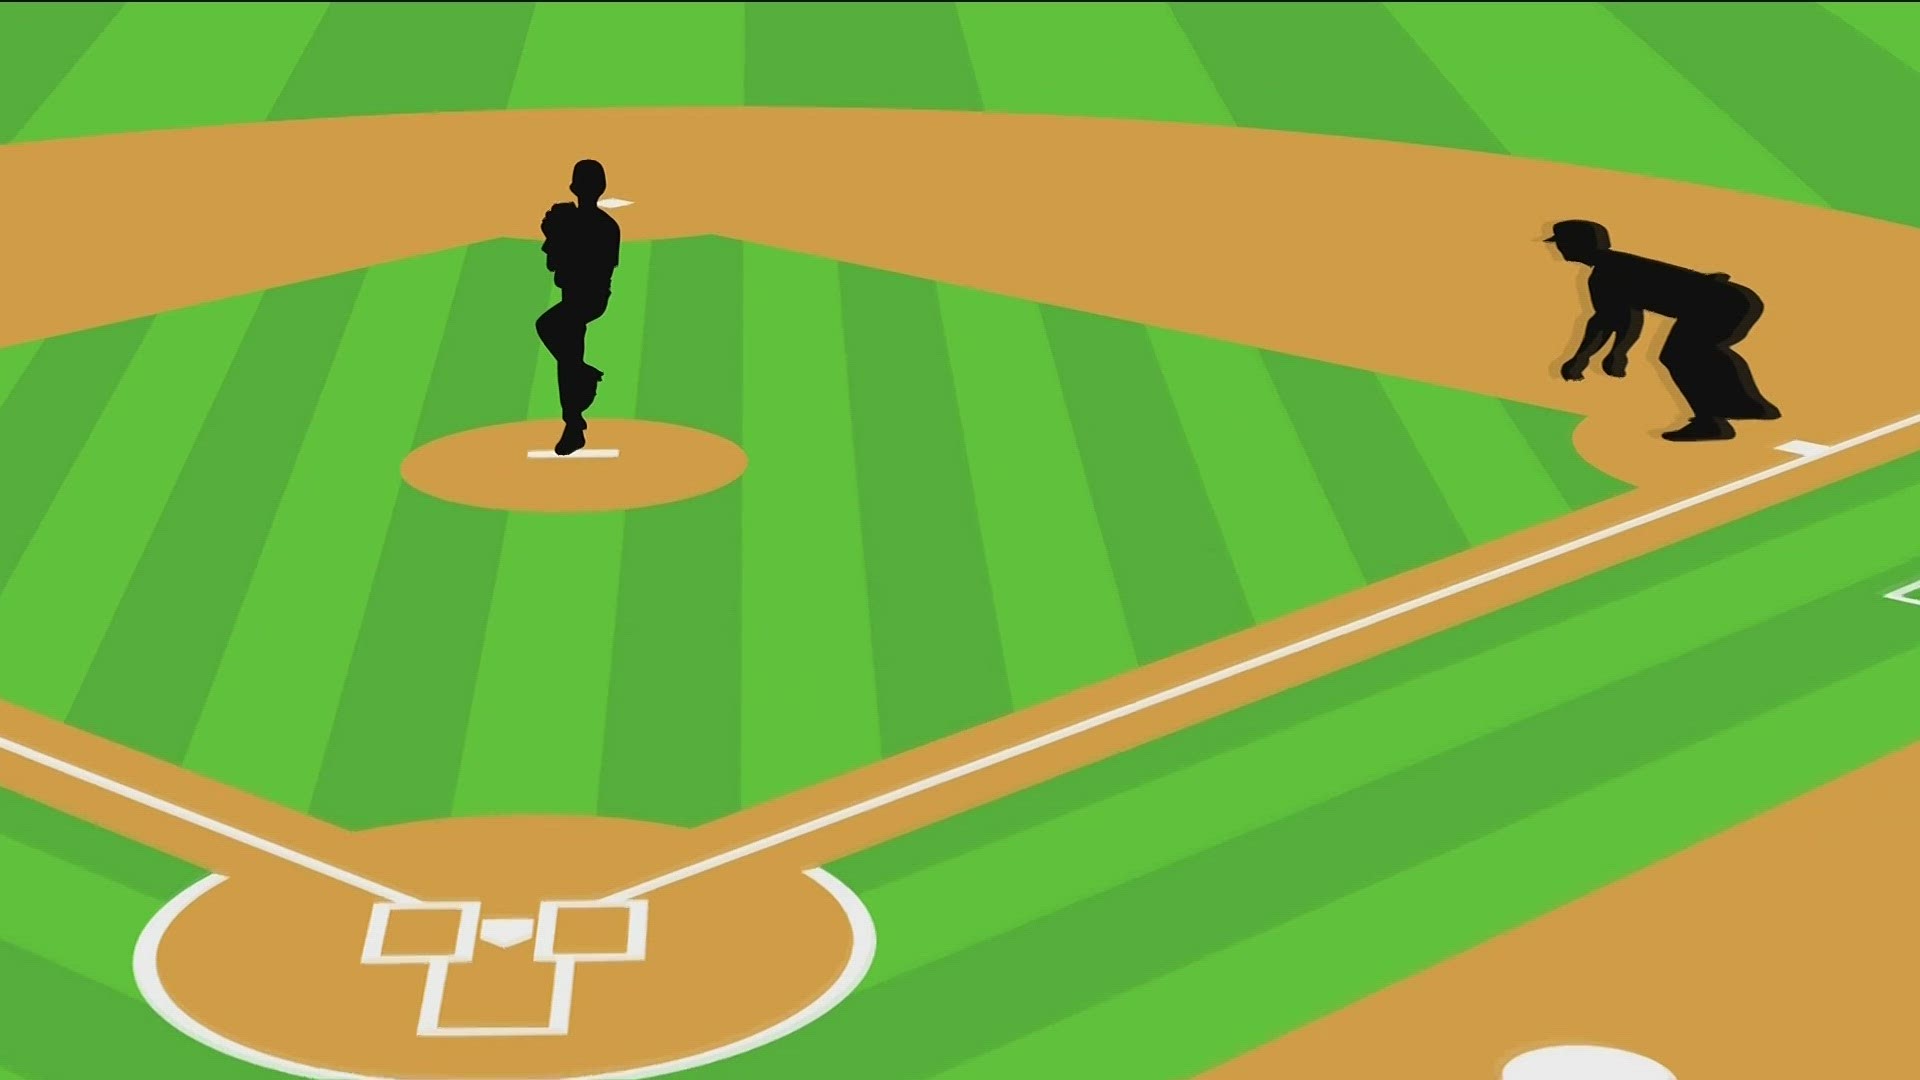 The Call-Up: Atlanta Braves Austin Riley - Baseball